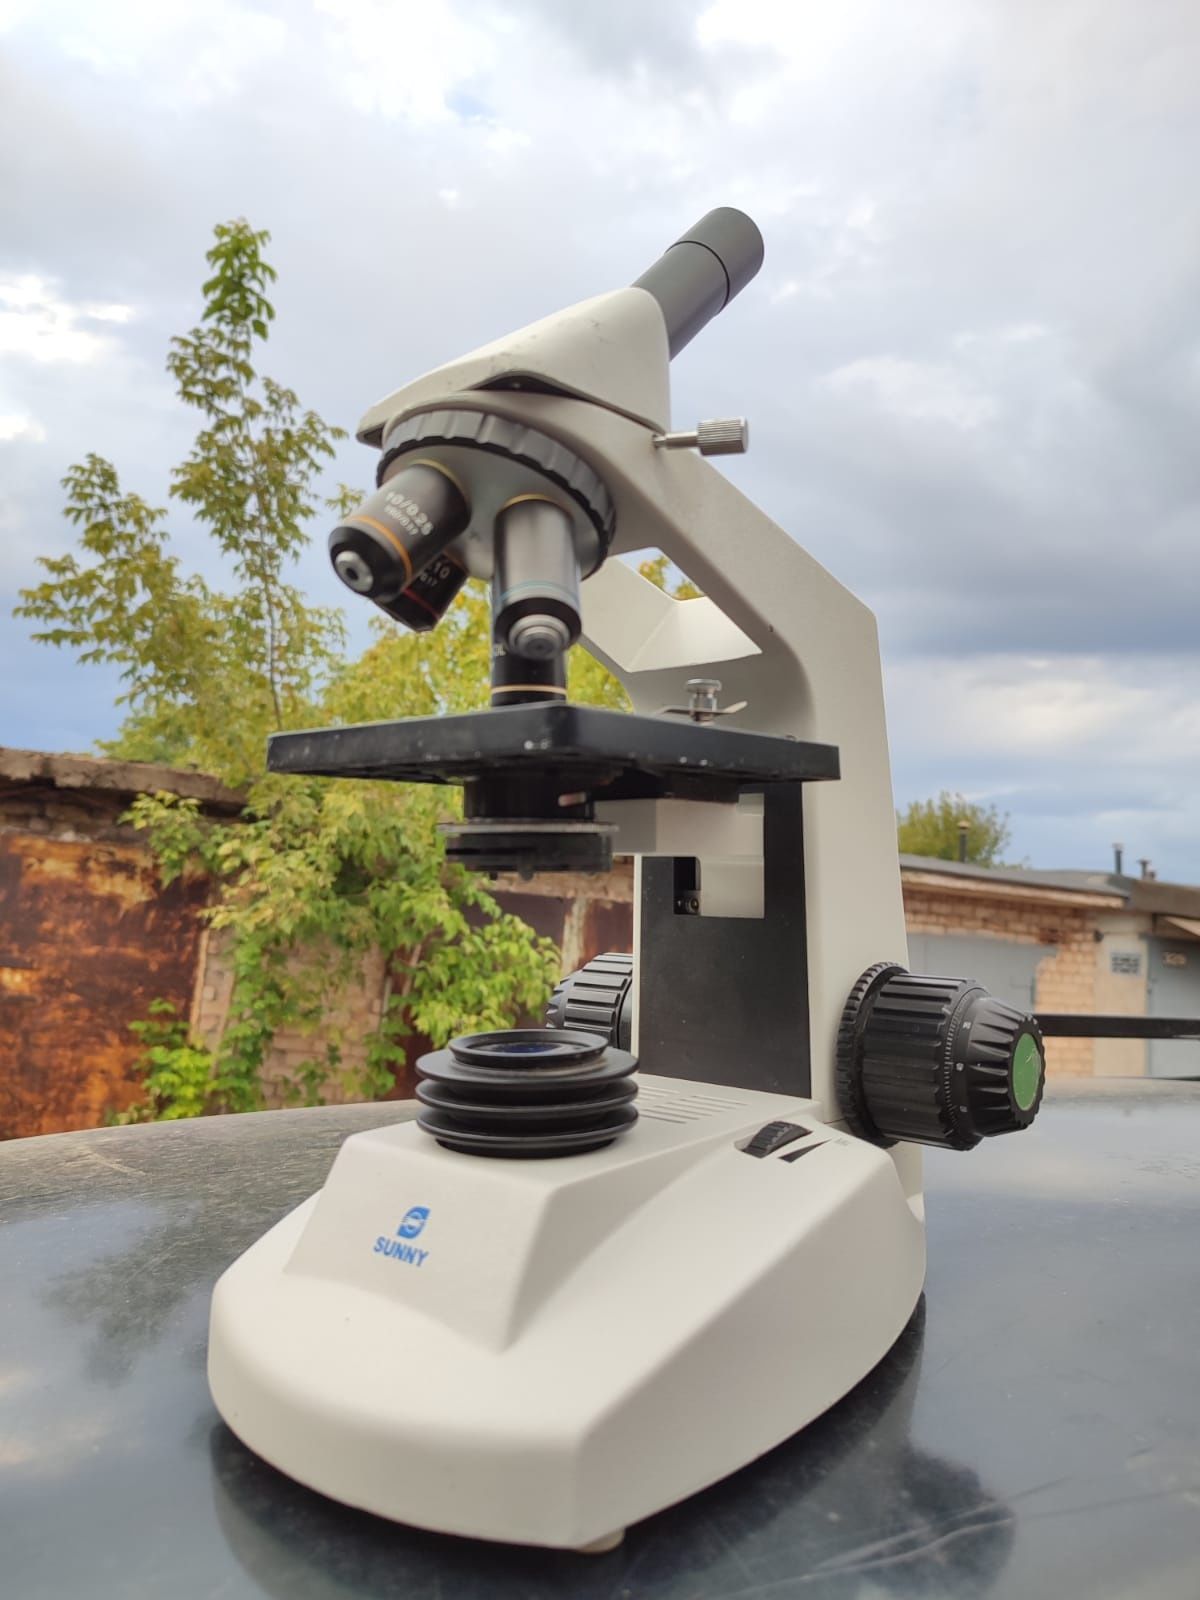 Мікроскоп XSM-10